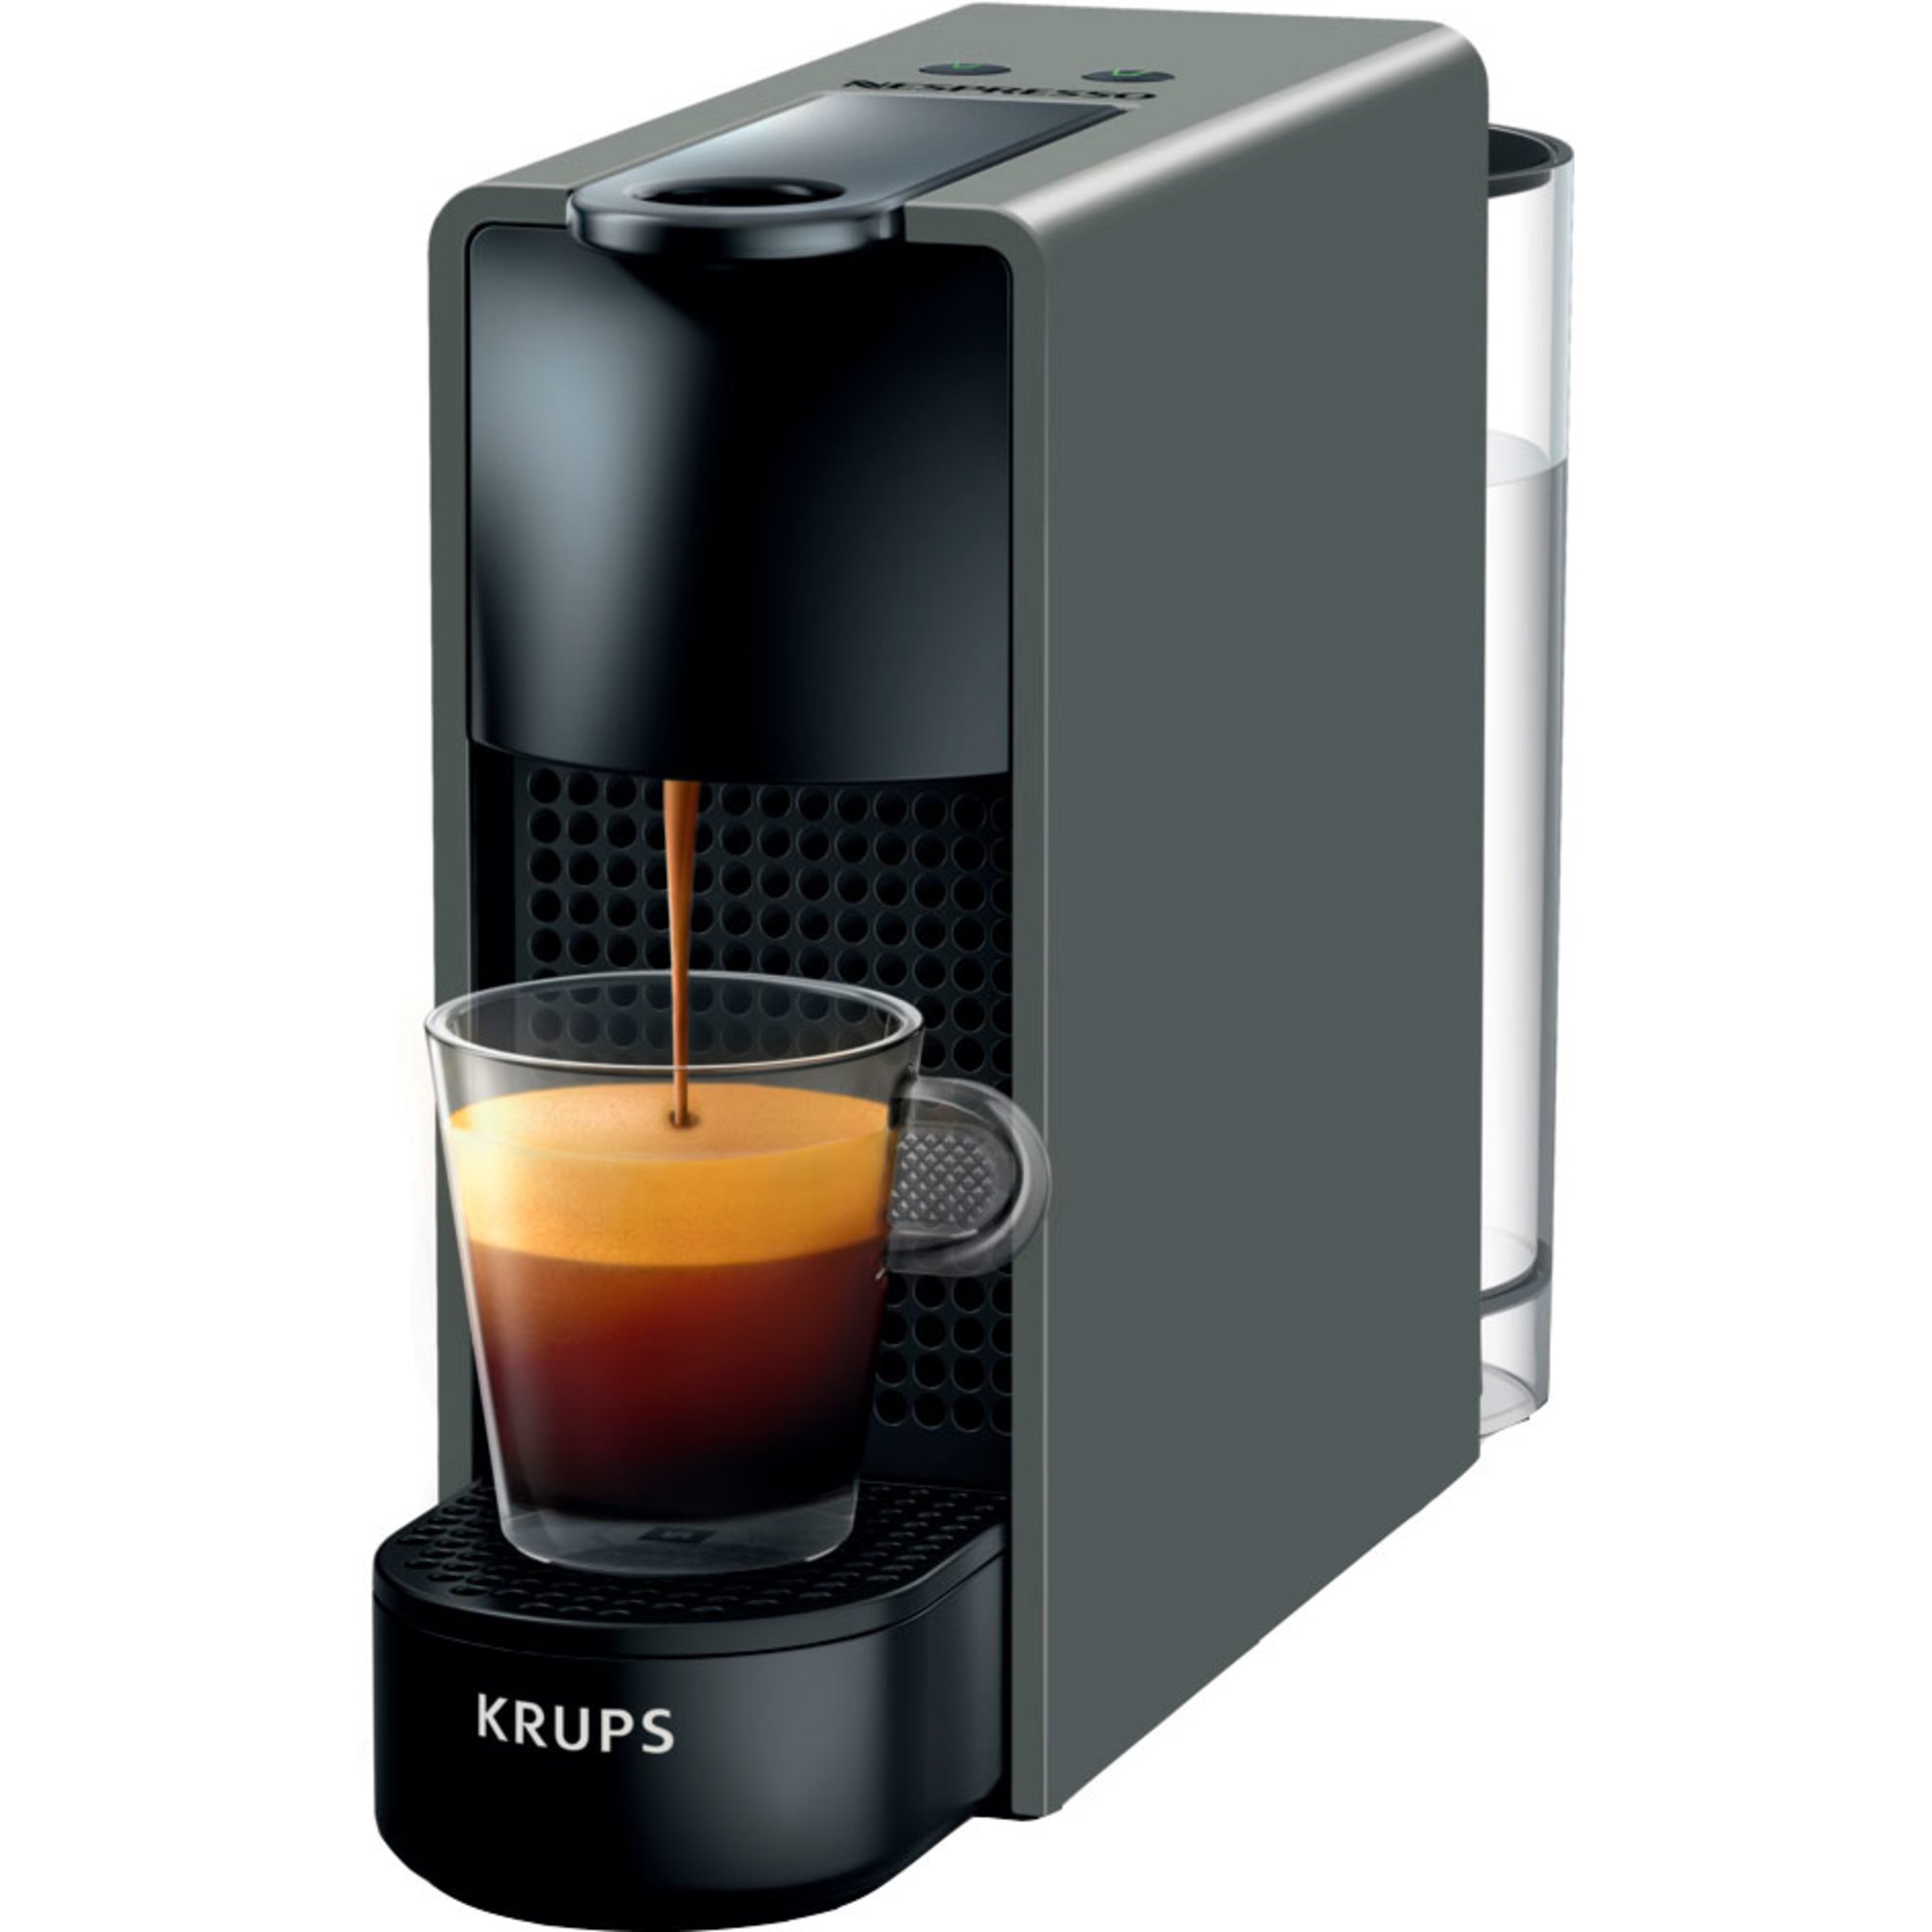 bogstaveligt talt forbi software Nespresso maskine tilbud → Se de bedste priser her